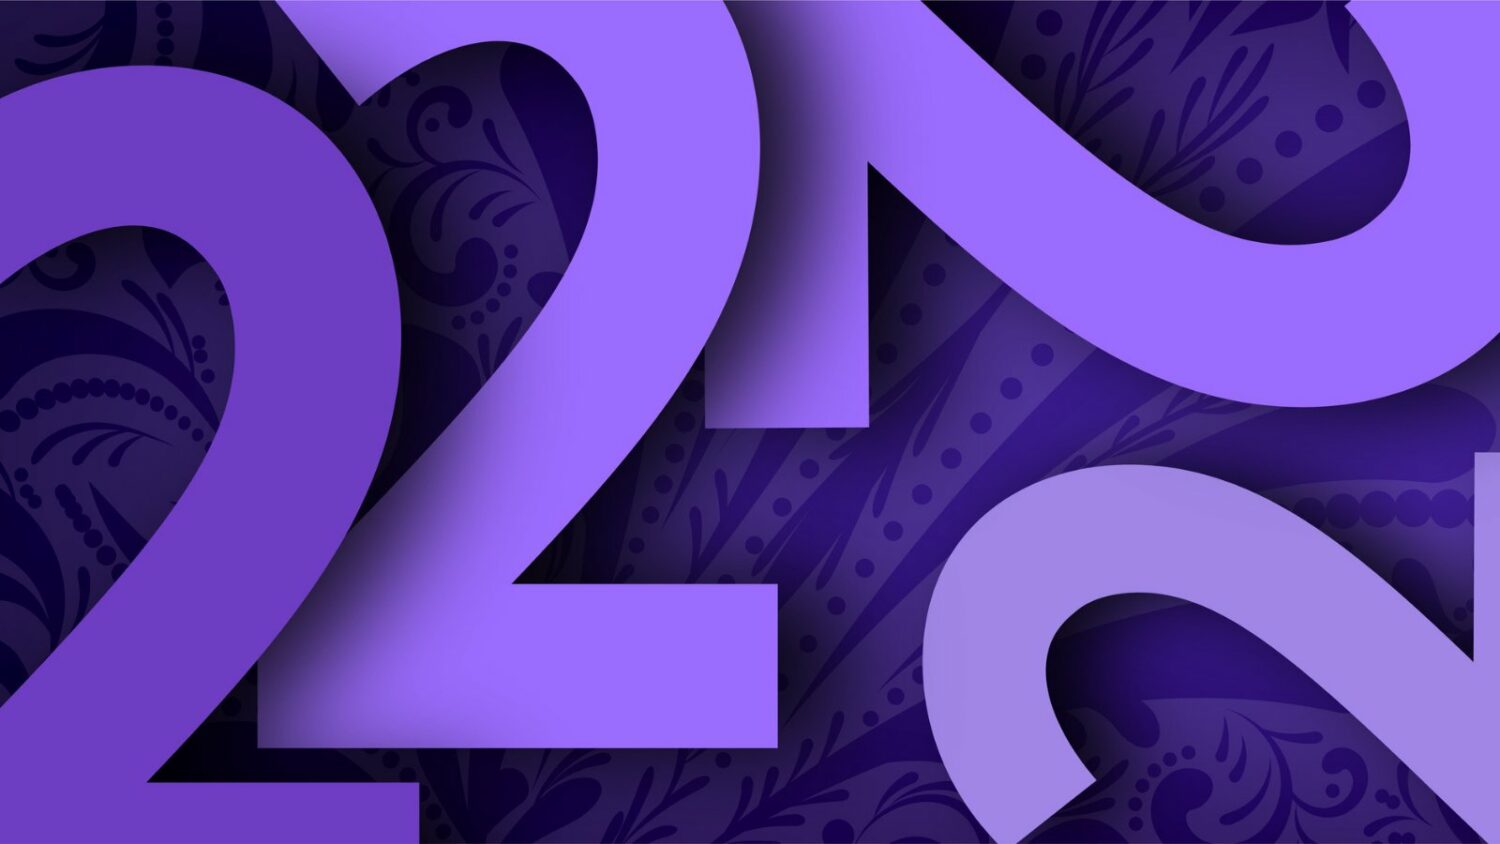 22/2/22: Σήμερα είναι «Twosday» και υπάρχει μια «δύναμη» σε αυτήν τη μοναδική ημερομηνία